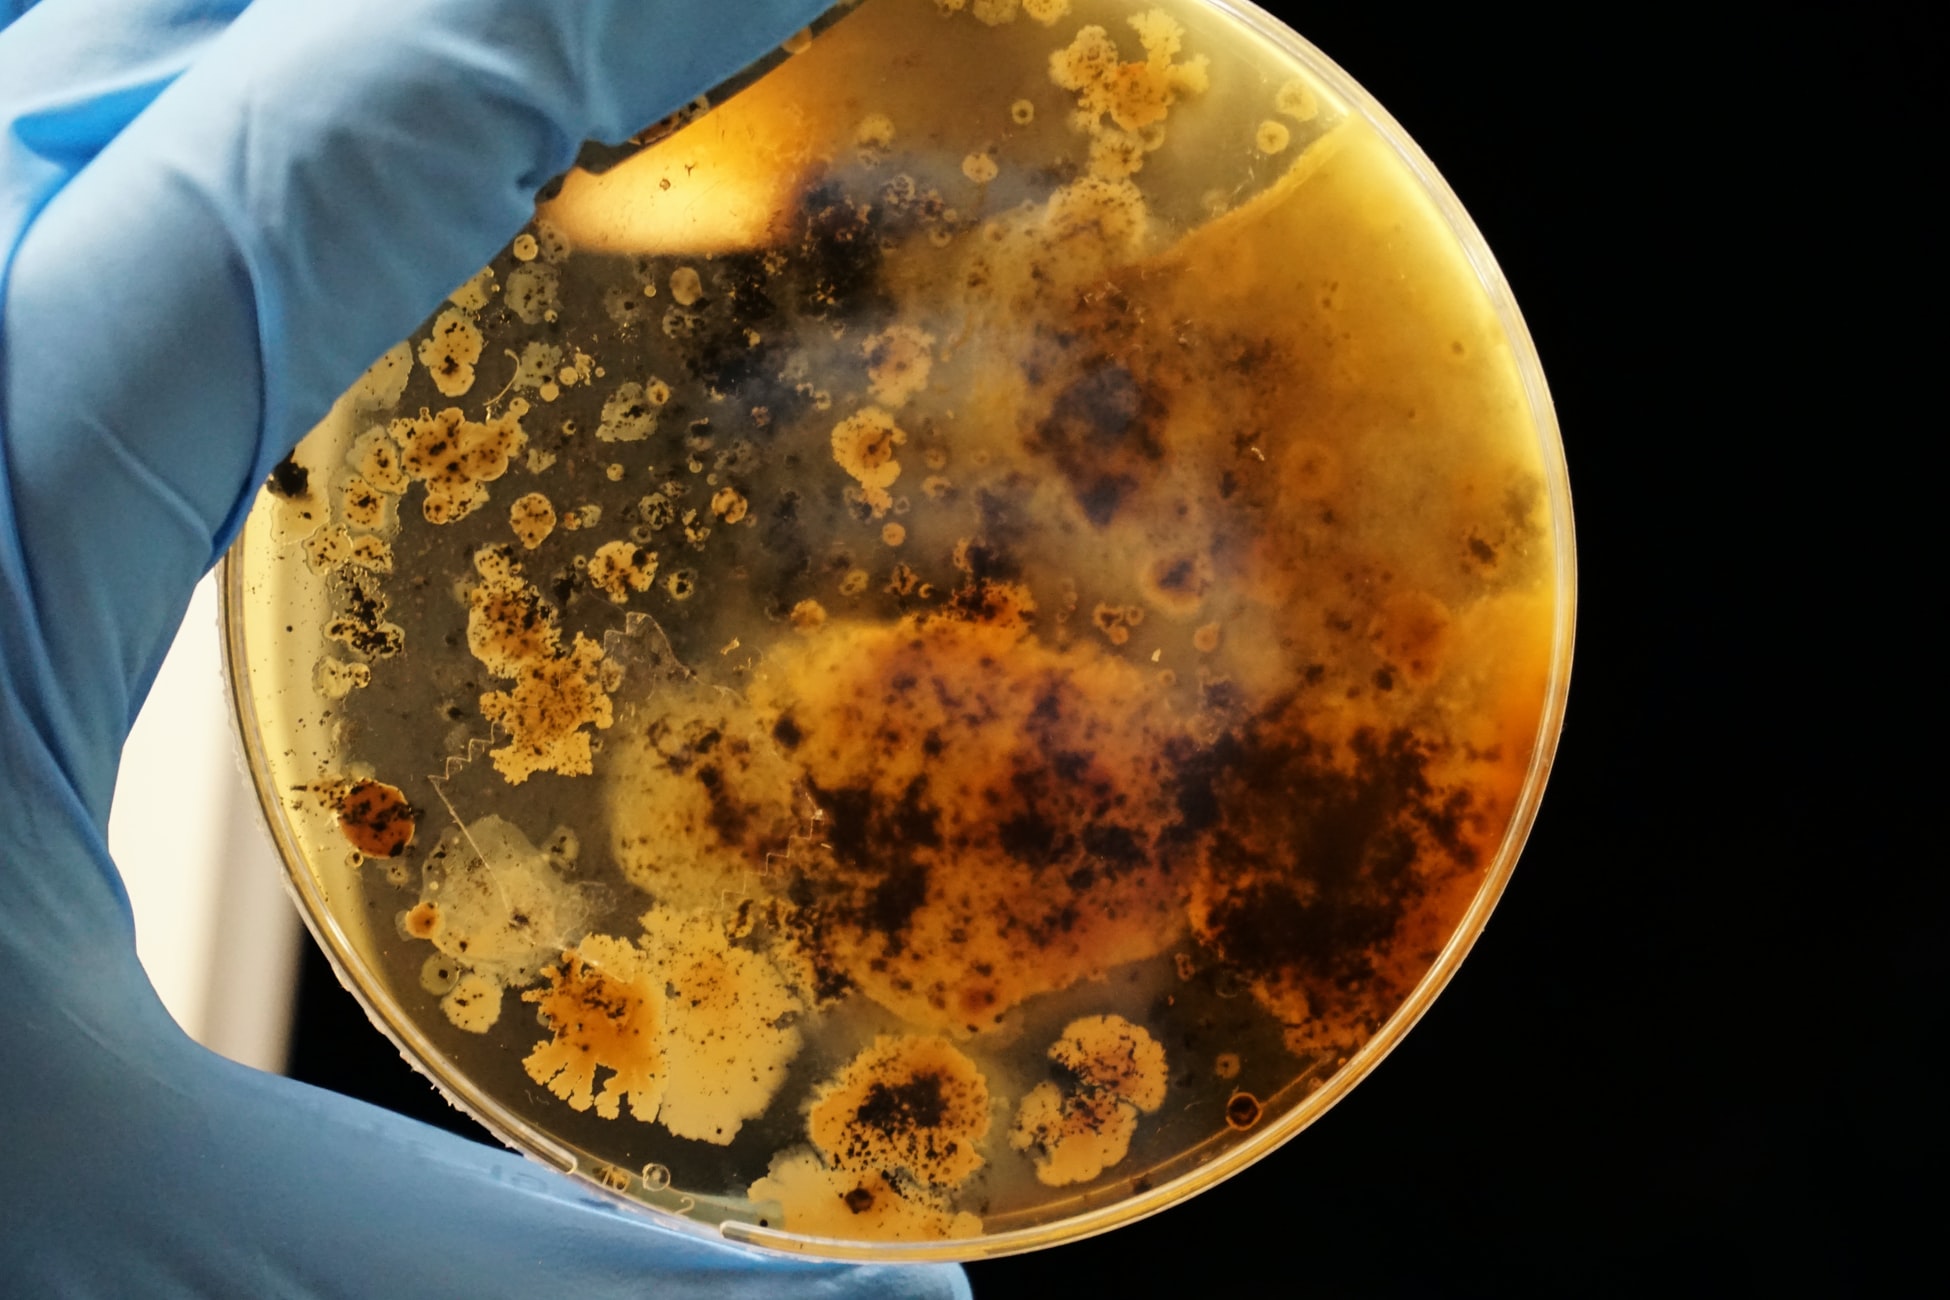 Unsplash - Bacterial colonies grown on an agar plate 